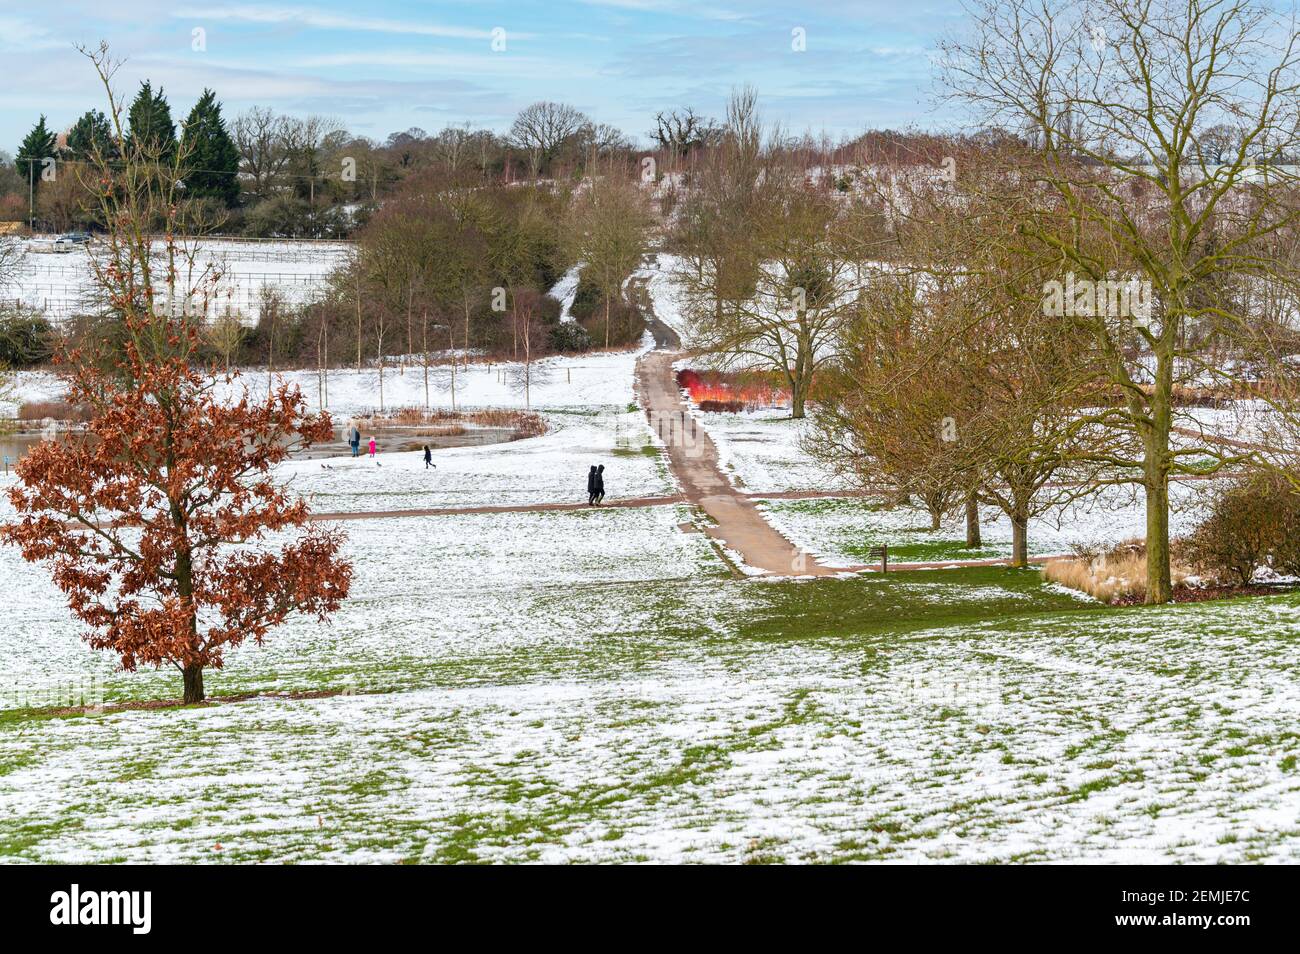 Genießen Sie Winterspaziergänge in der RHS Hyde Hall, Essex. Überall Schnee, aber klare Wege für sichere Spaziergänge. Stockfoto